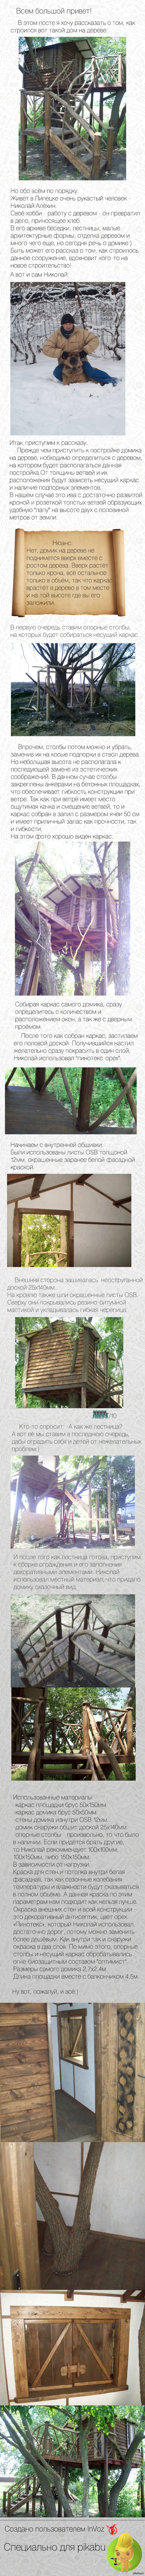 Как строился домик на дереве | Пикабу